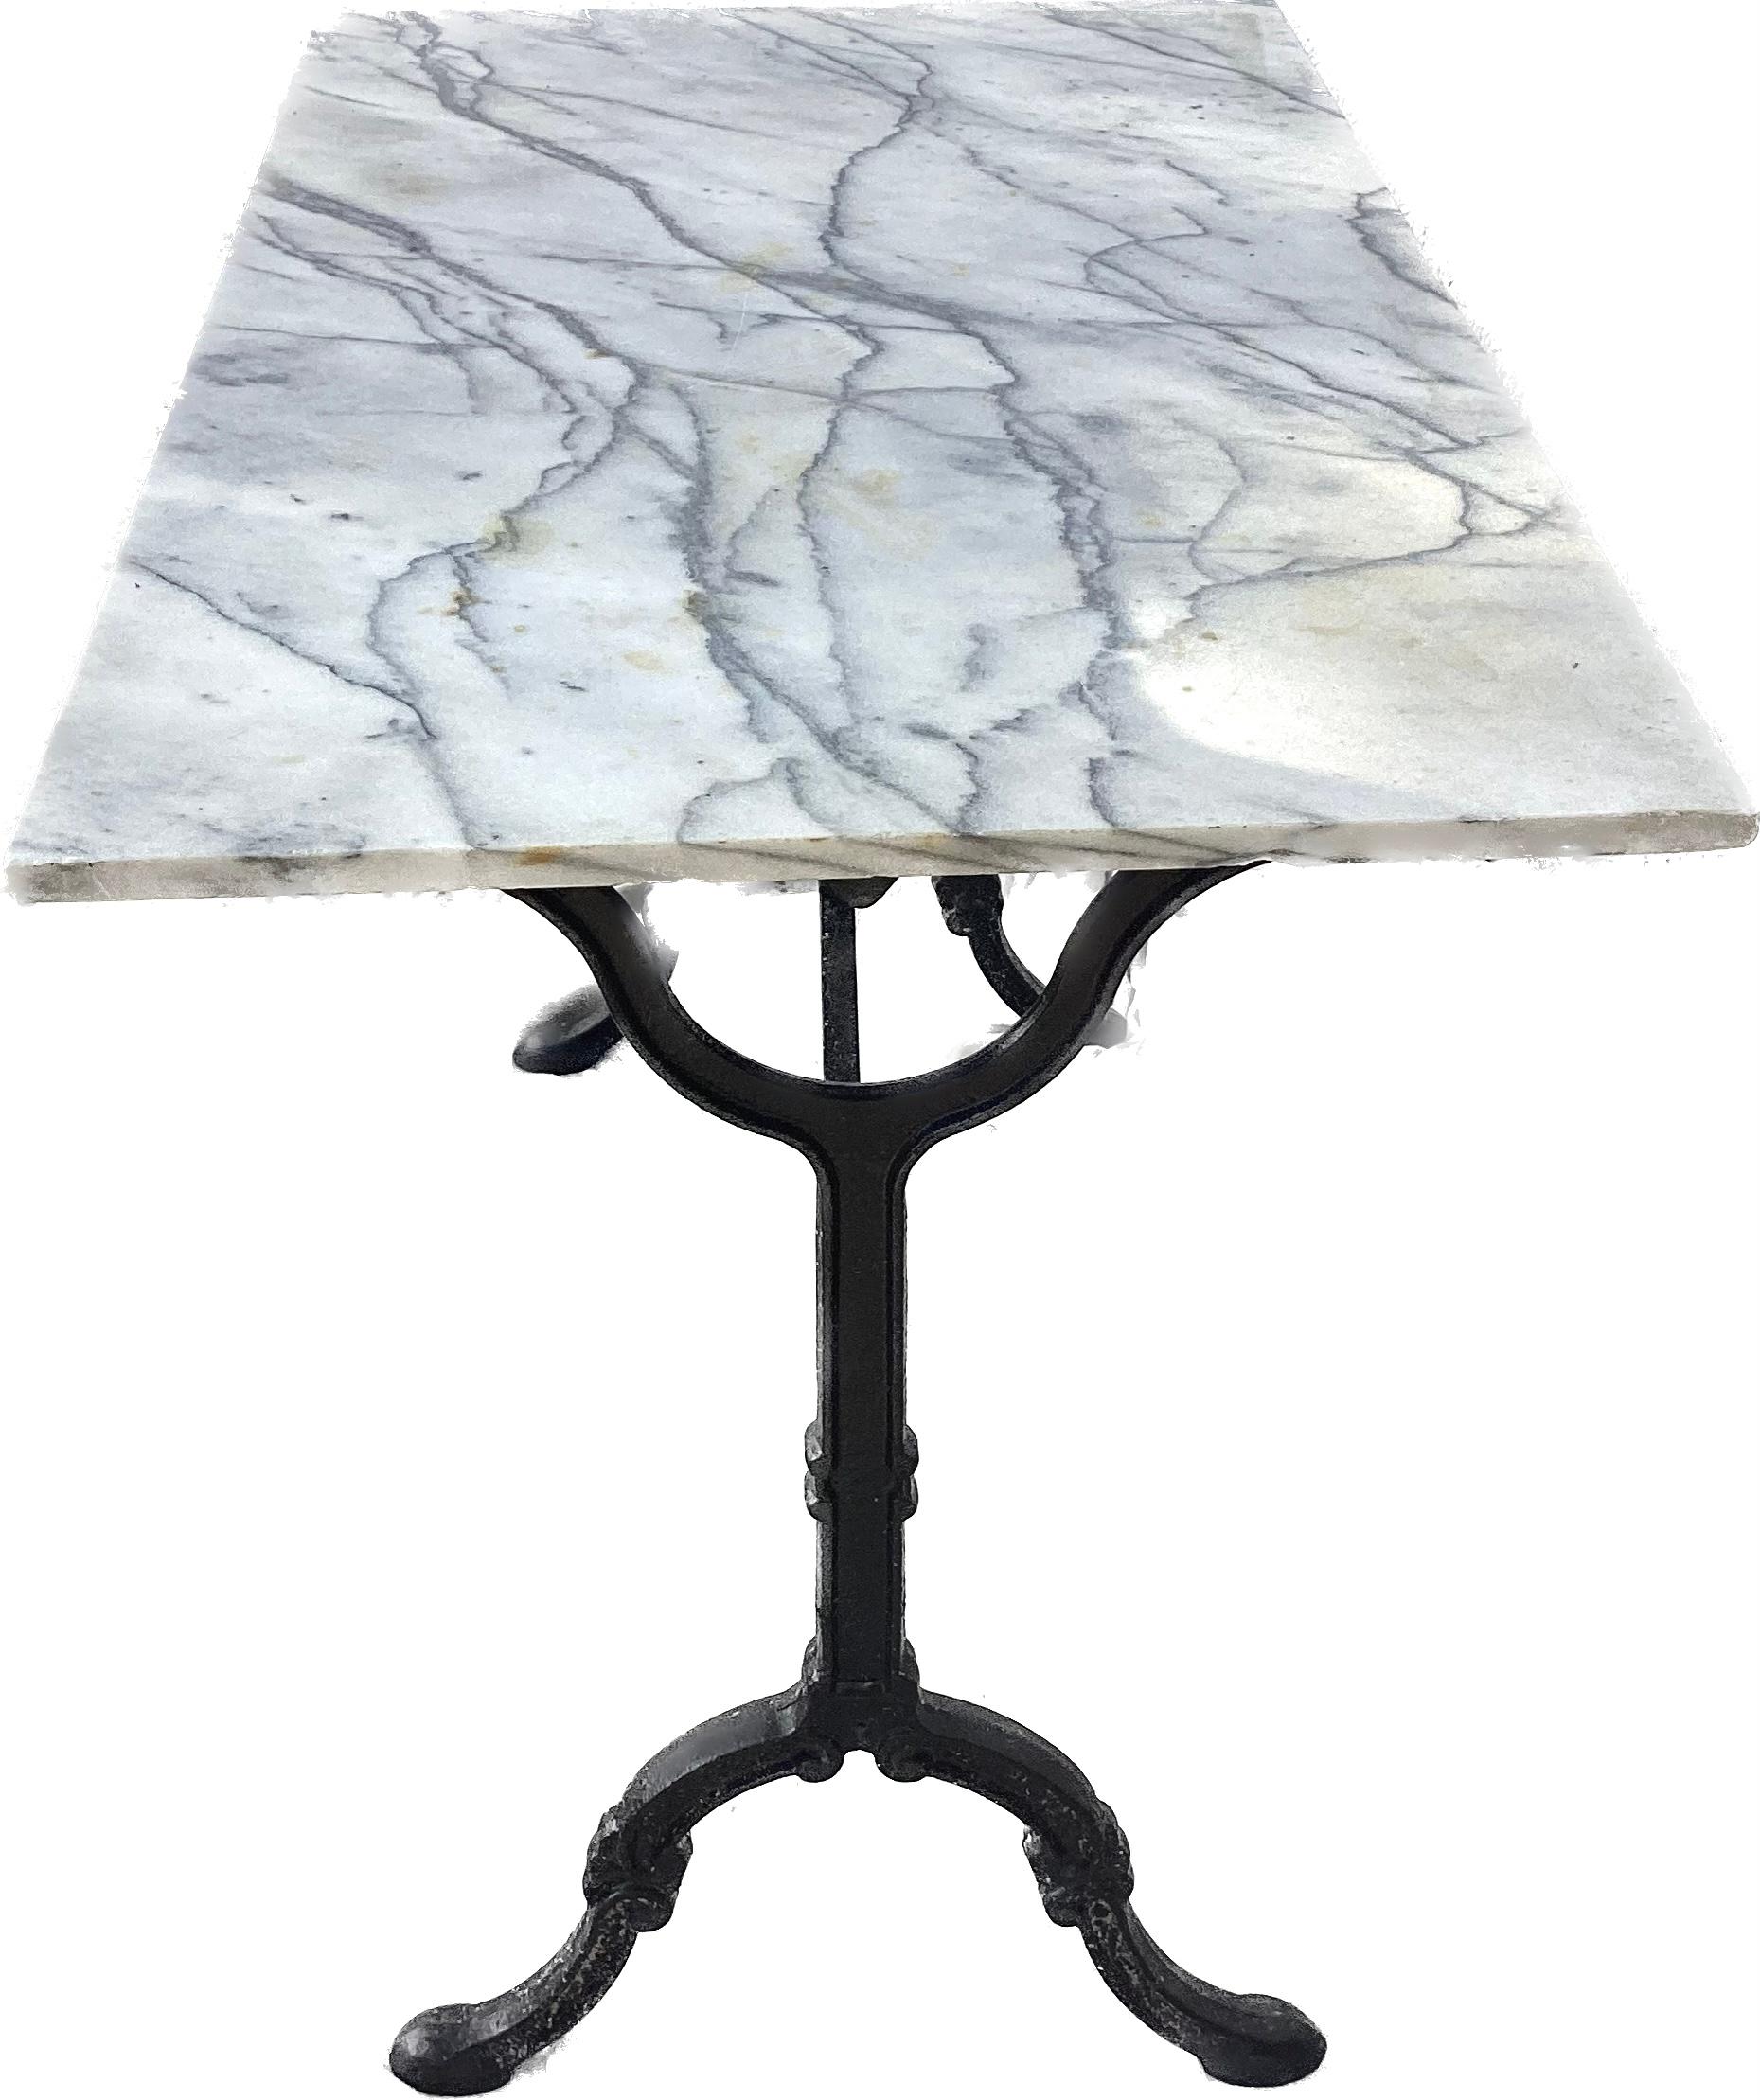 Table de bistrot française en fonte à plateau de marbre noir, blanc et gris. Belle patine. Parfait pour l'intérieur ou l'extérieur. Très solide et robuste. 